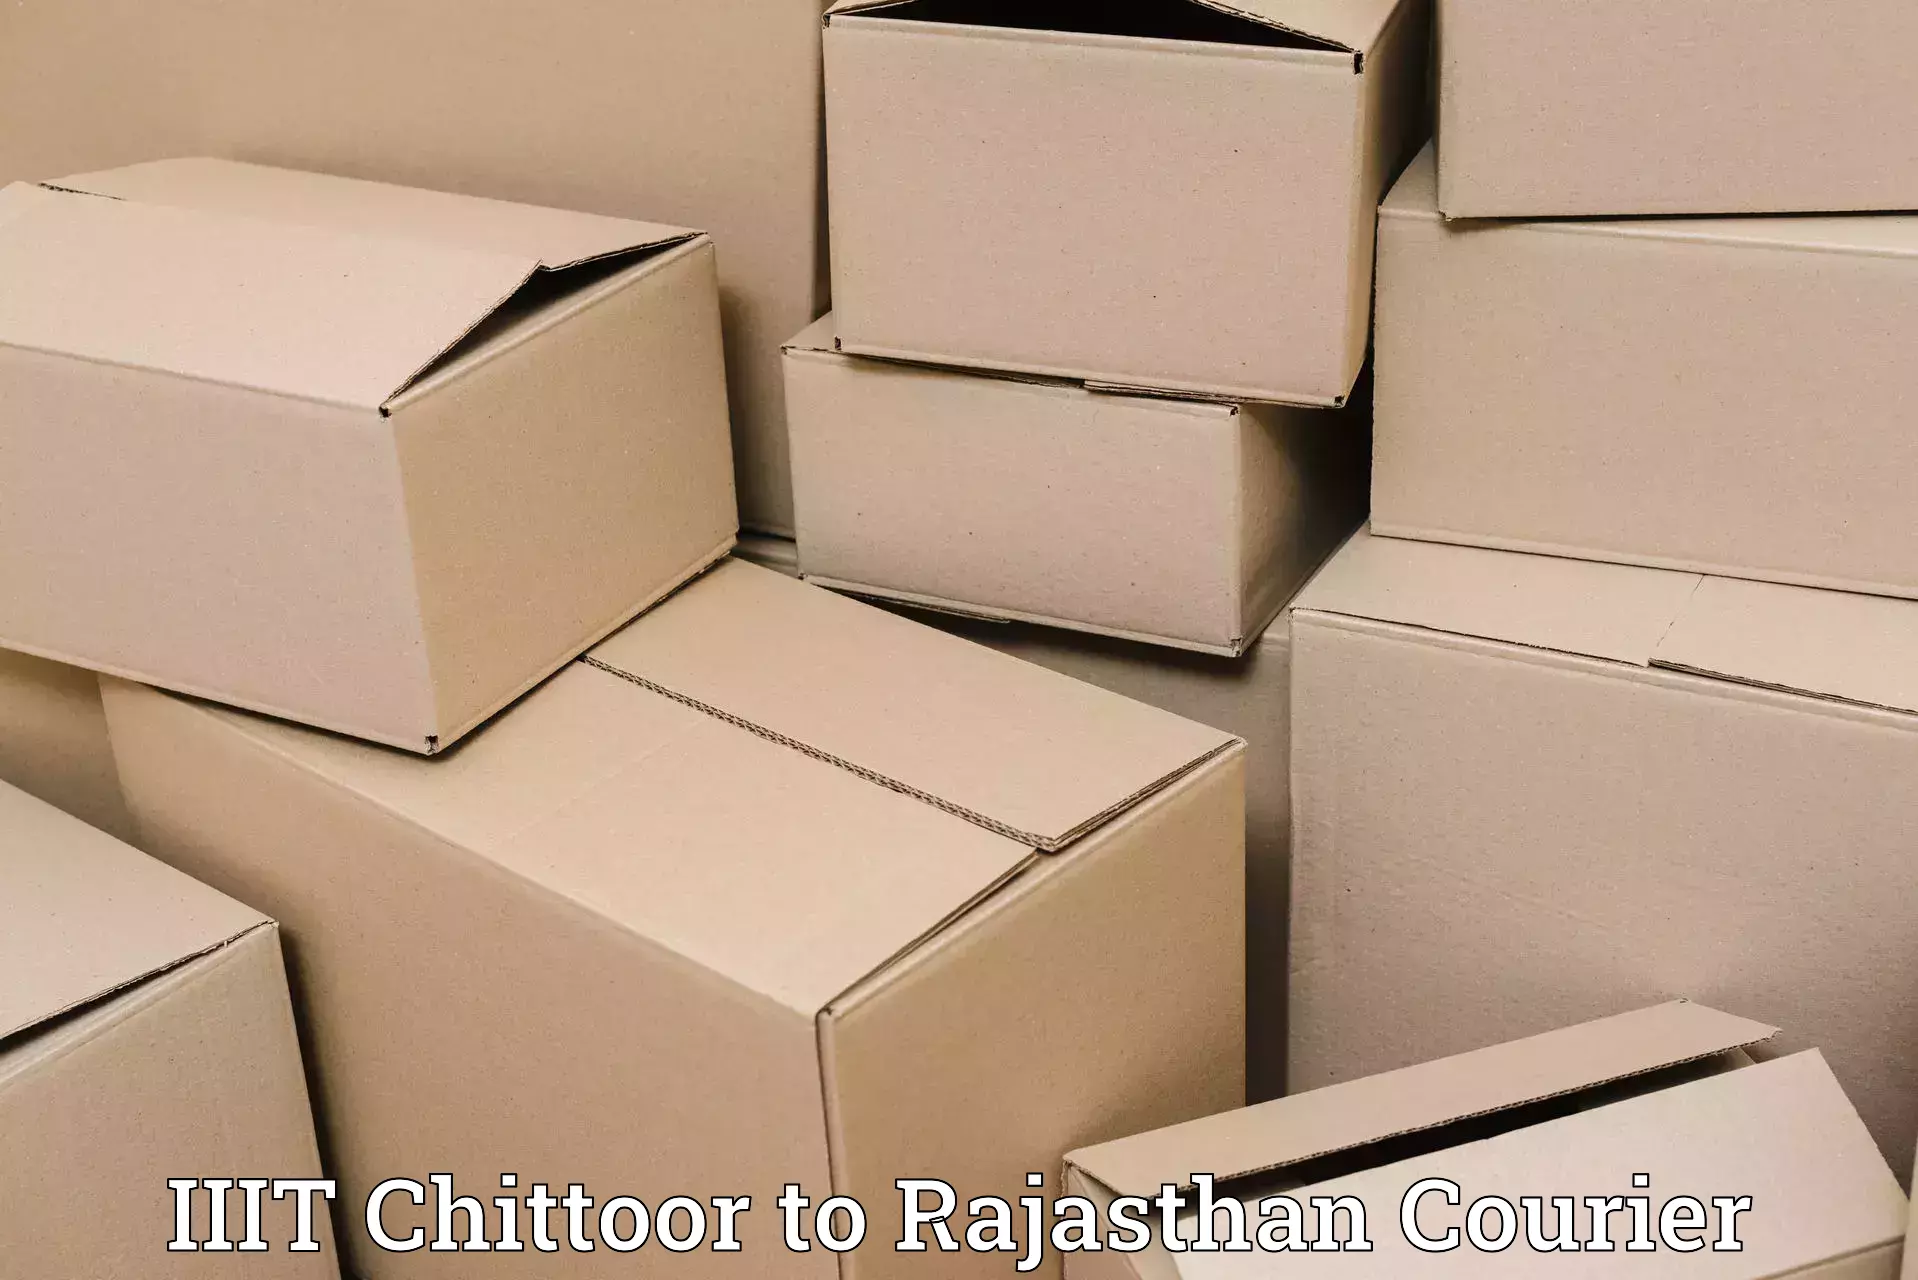 Courier insurance IIIT Chittoor to Bhilwara